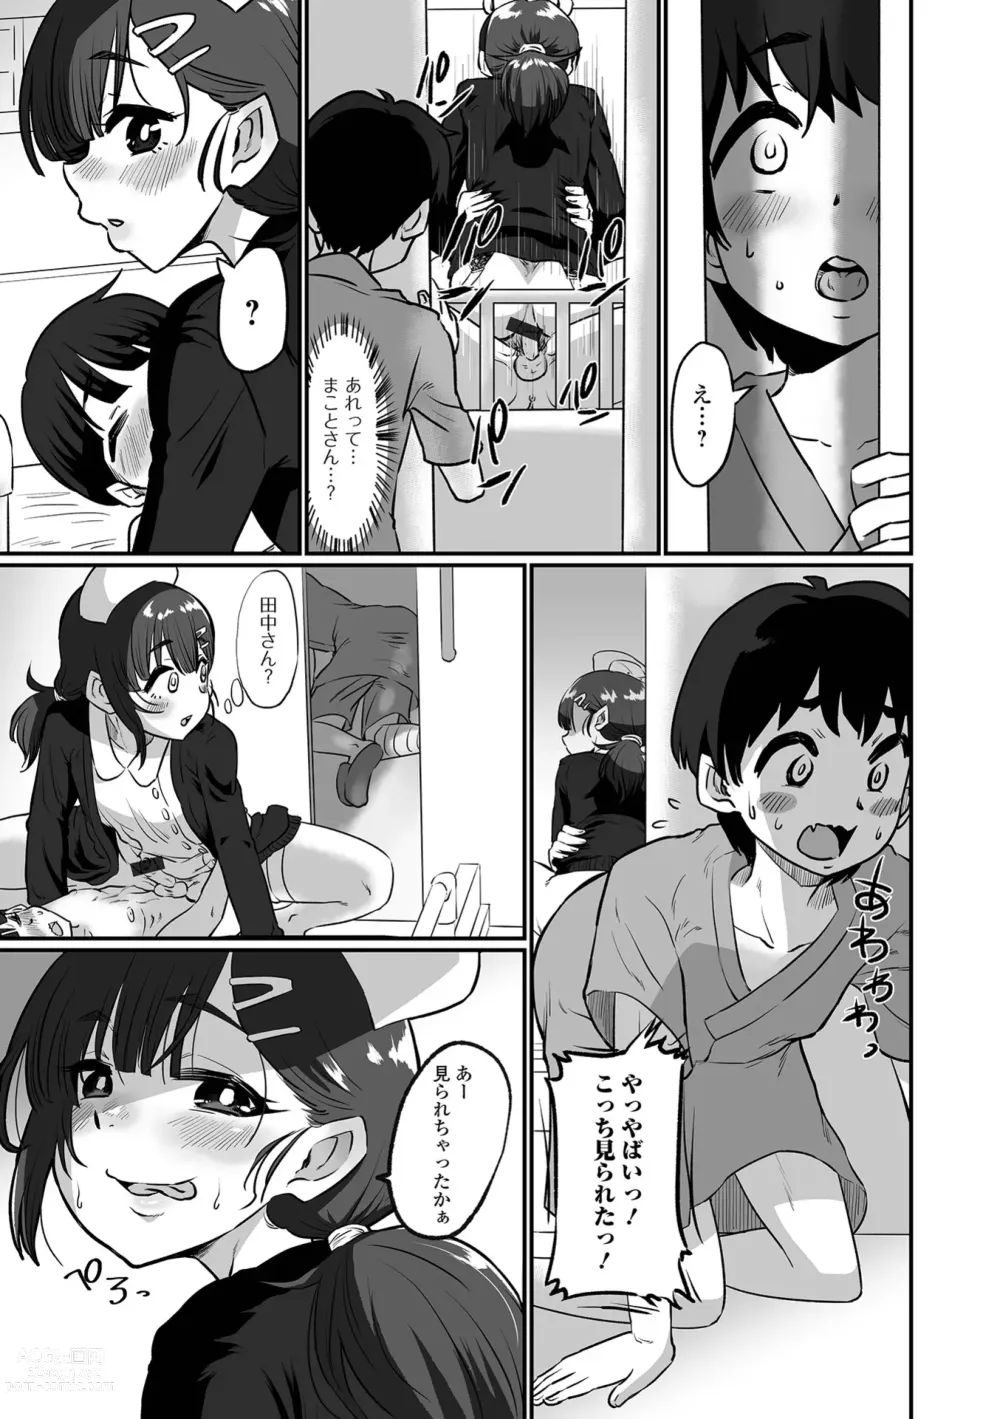 Page 85 of manga Kawaii Otokonoko wa Suki Desuka?